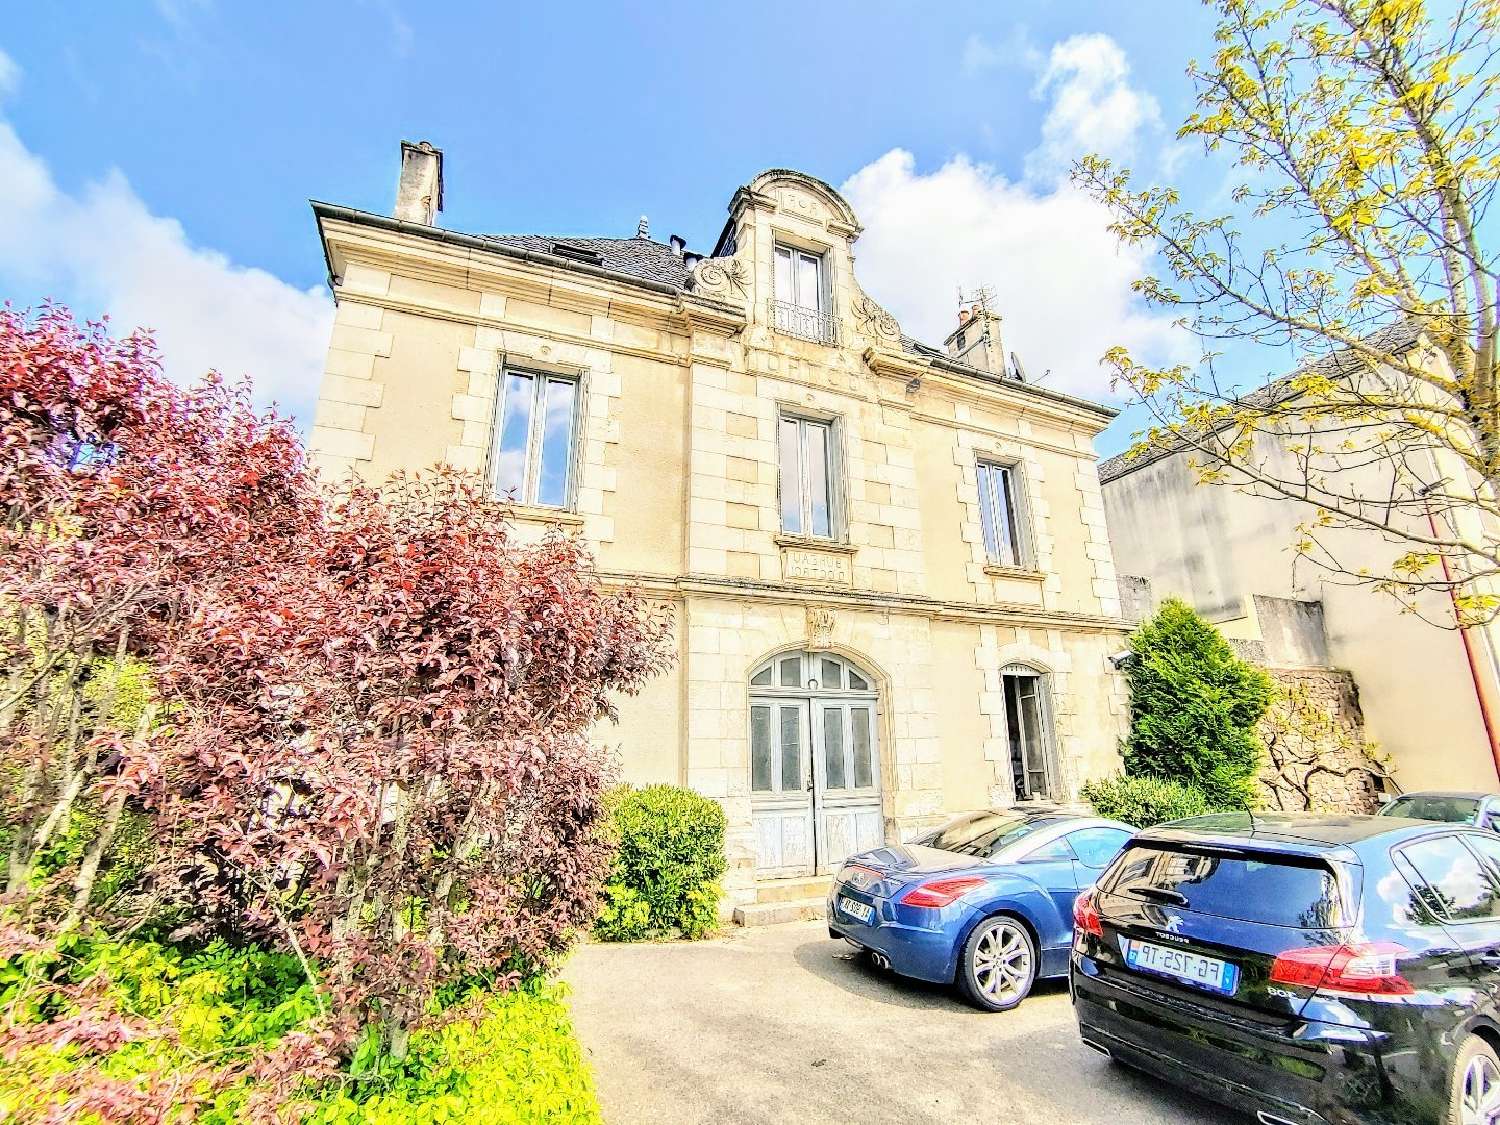  à vendre maison Rodez Aveyron 4